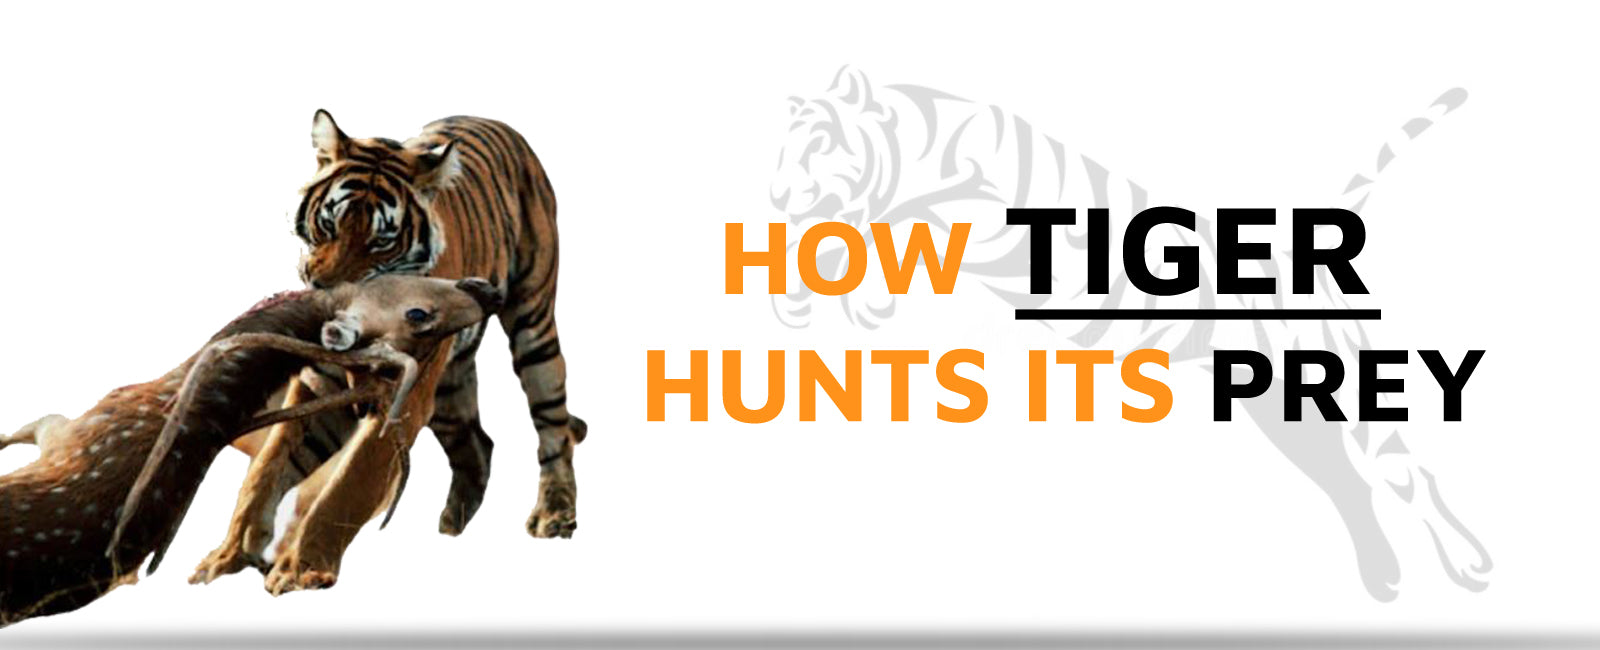 How Tiger Hunts its Prey?